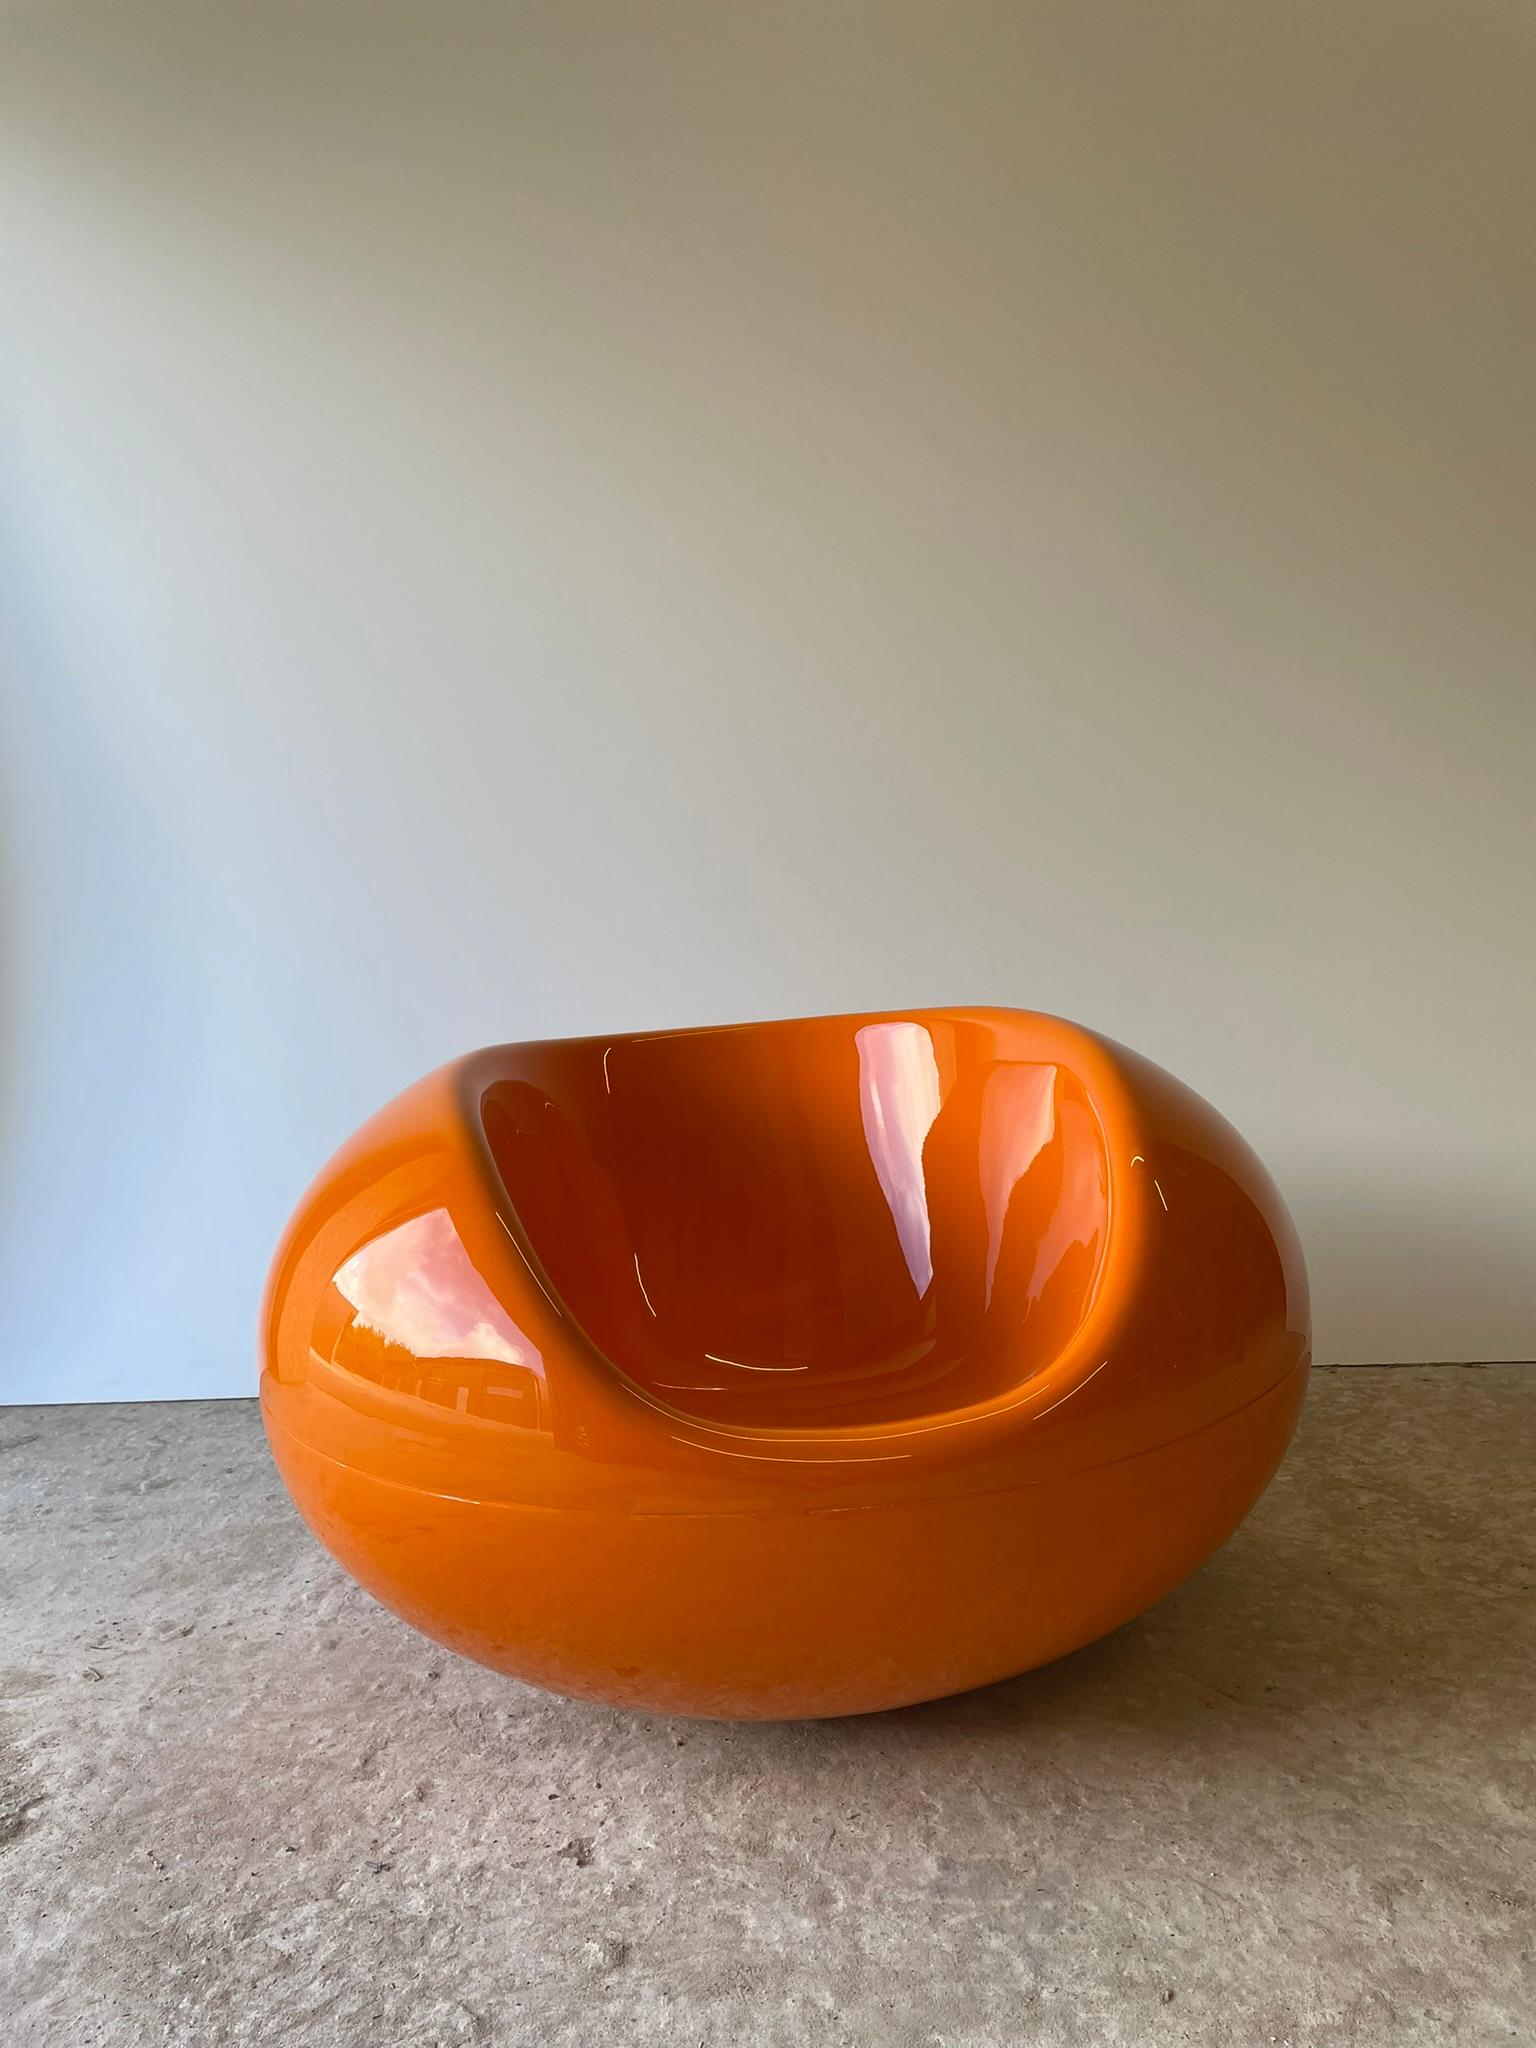 Finnischer Knall Orangener Pastille-Sessel aus Fiberglas von Eero Aarnio für Asko, 1967. Der Pastille-Sessel ist eher ein Kunstwerk als ein einfacher Sessel oder Schaukelstuhl. Er wurde 1967 entworfen und hat eine völlig versetzte Form, die an eine